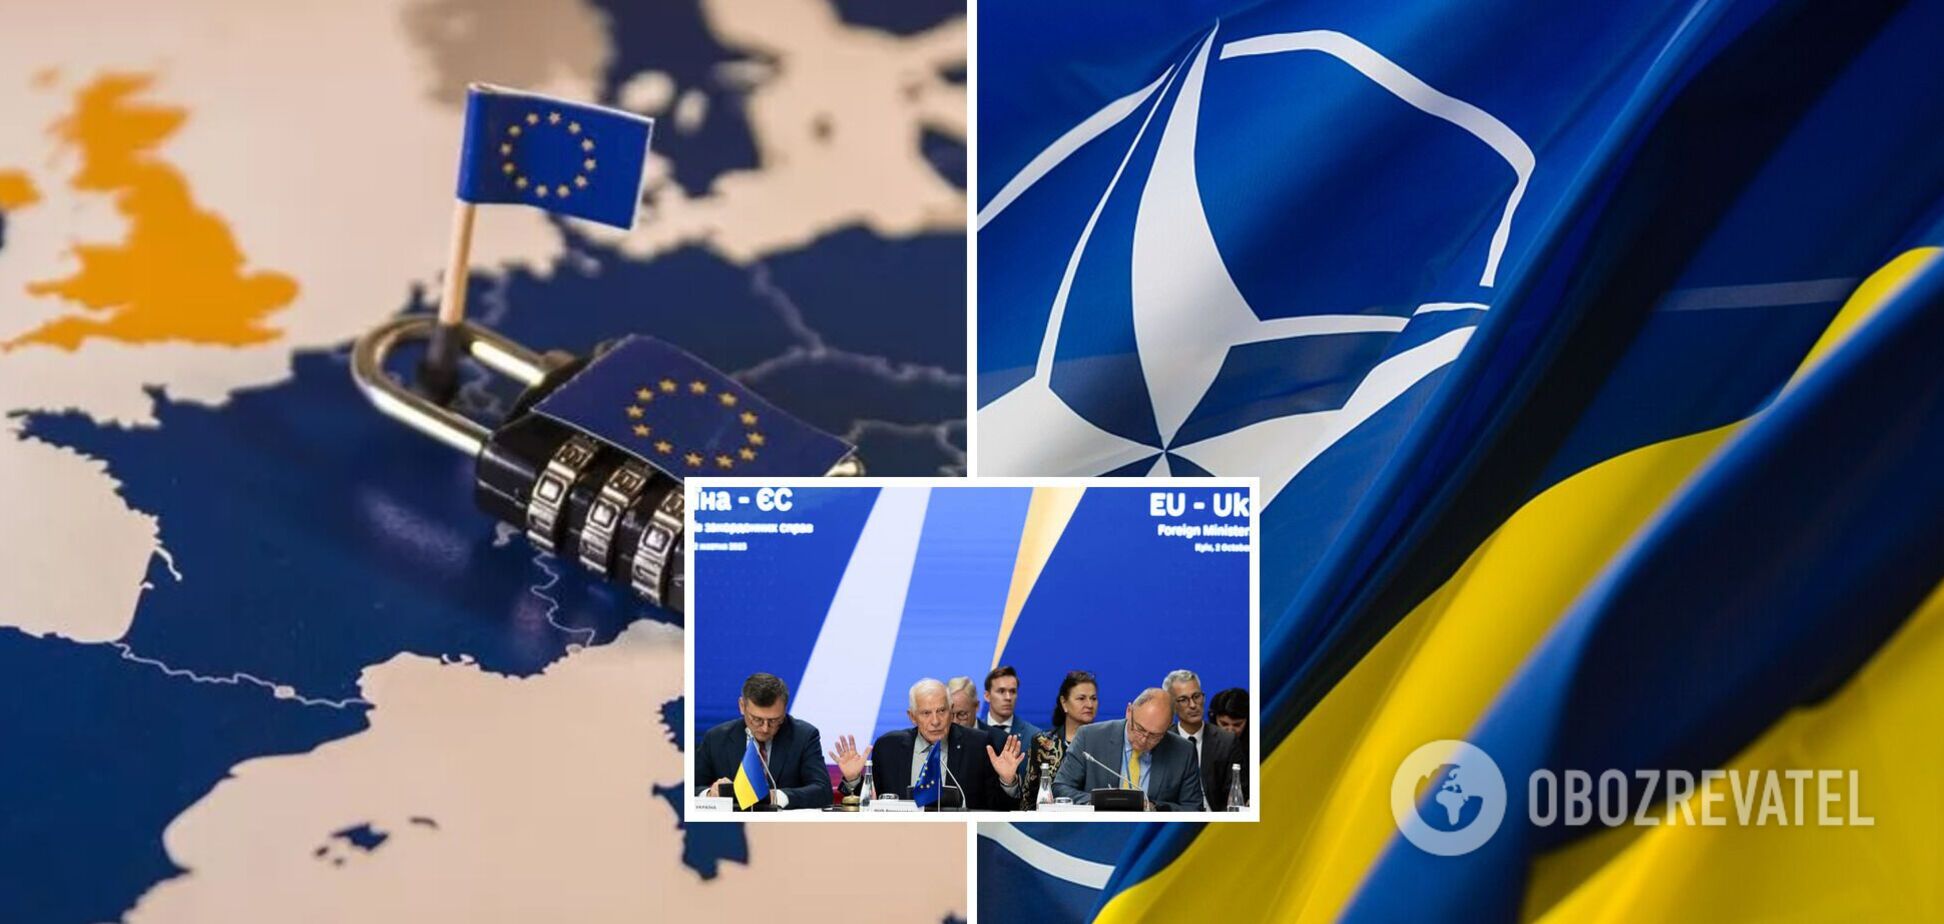 Маємо півтора роки на питання членства в НАТО і ЄС, треба готуватися до складних часів. Інтерв’ю з Огризком